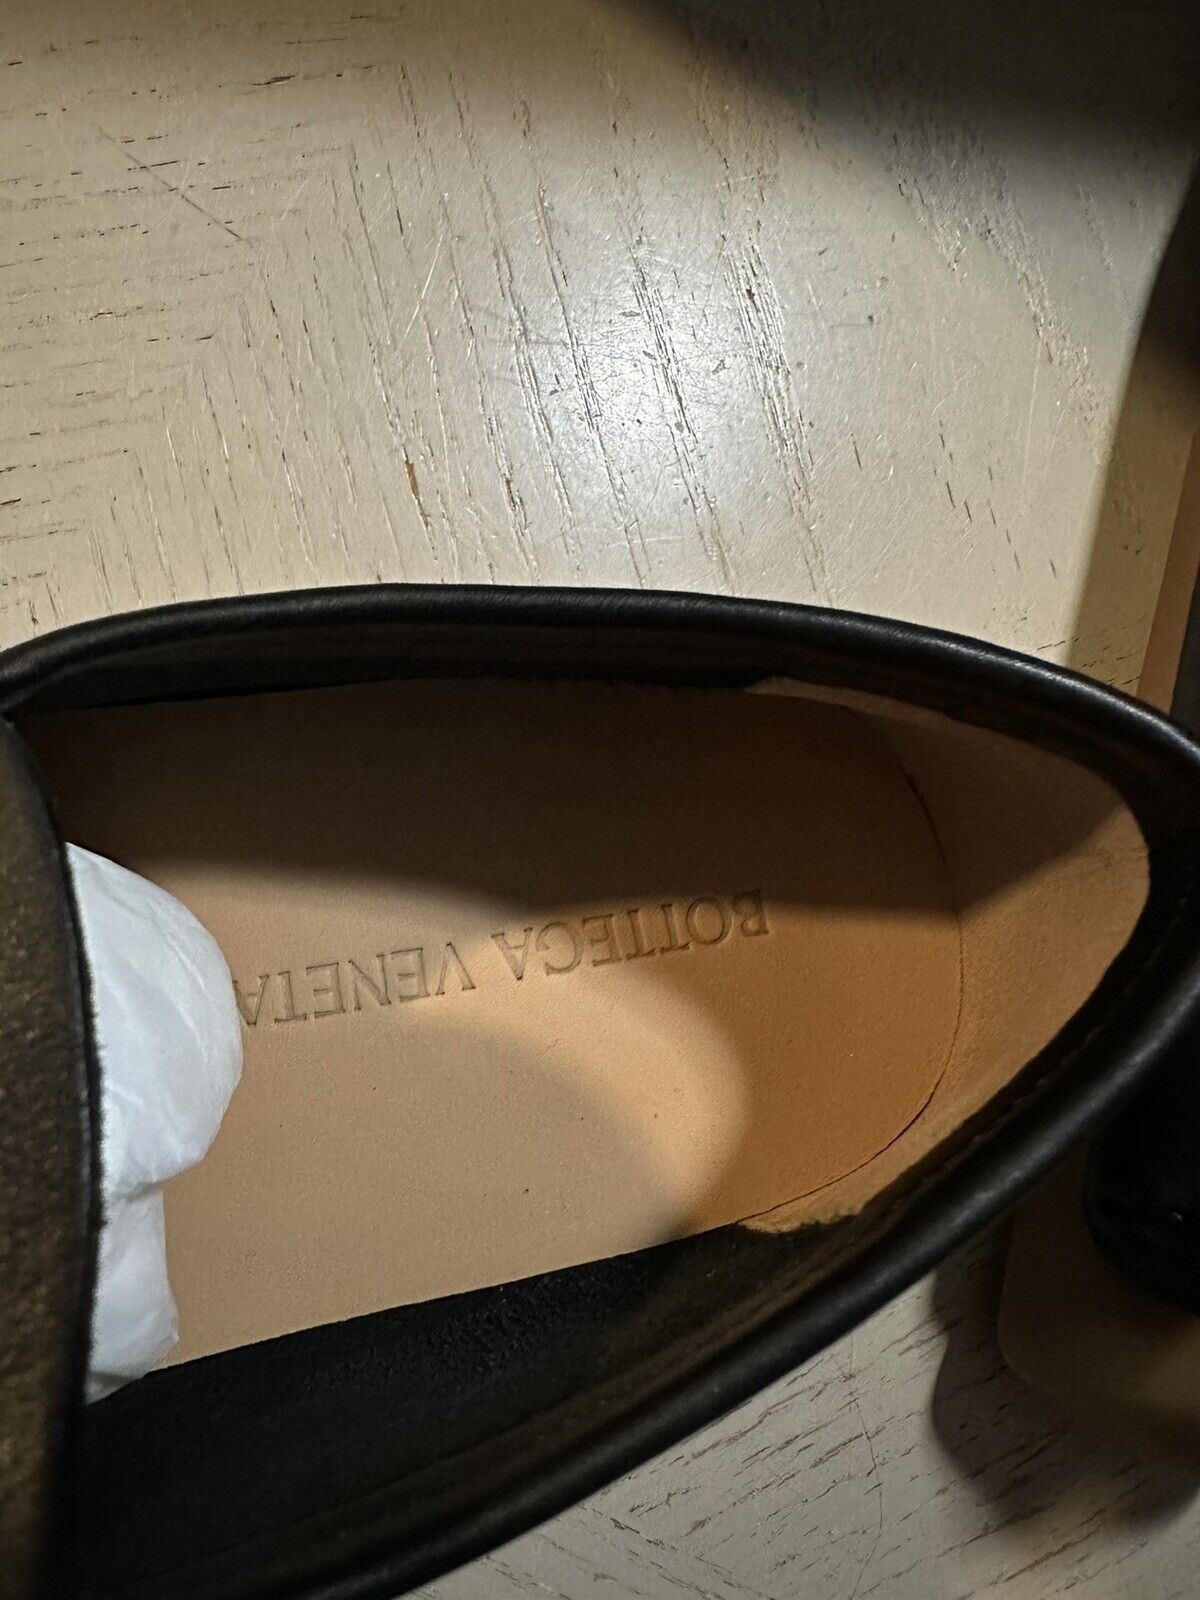 New $670 Bottega Veneta Men Leather Driver Loafers Shoes Black 10 US ( 43 Eu )